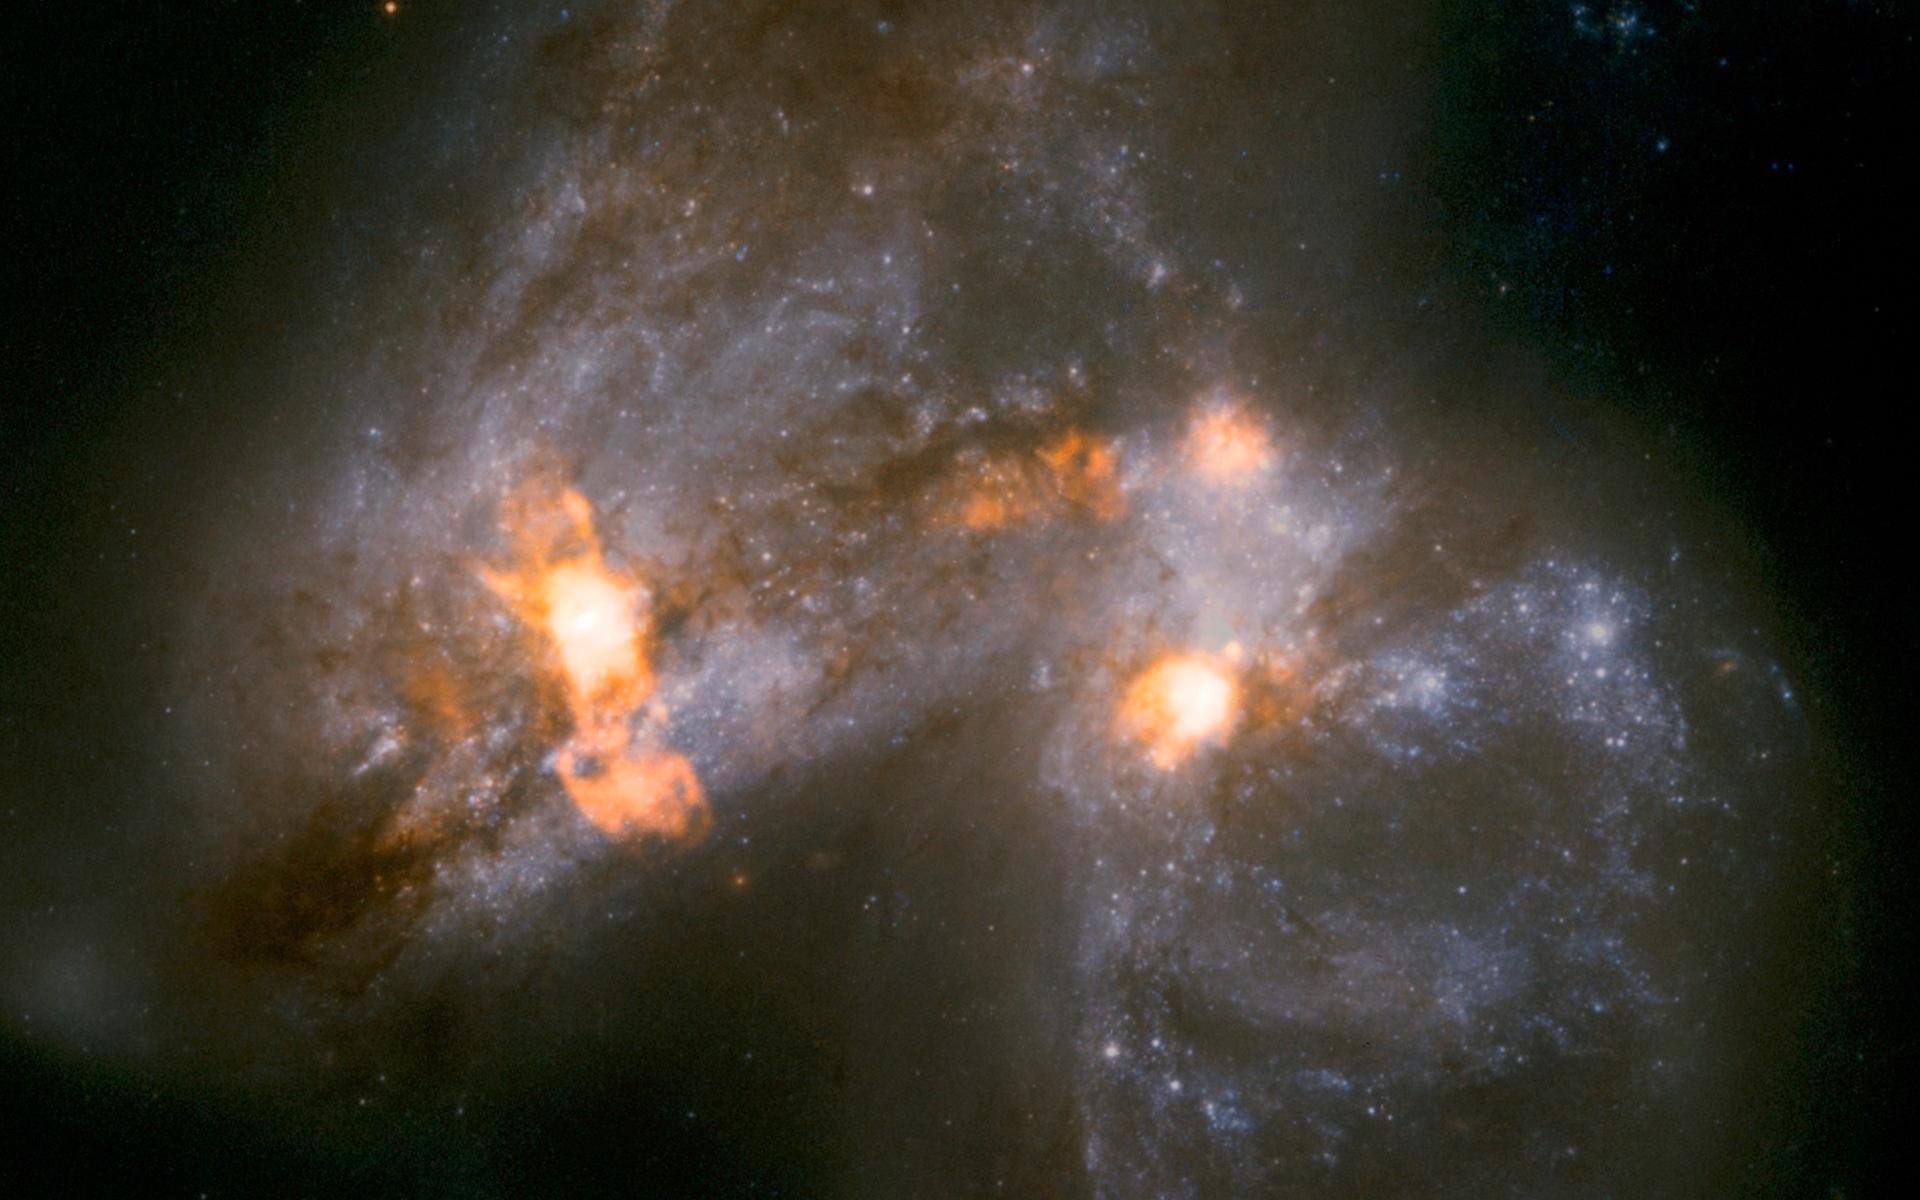 Galaxparet Arp 299 håller på att smälta samman. Lofar avslöjar hur vindar lika stora som en galax blåser ut från en jättelik stjärnfabrik – triggat av krocken mellan galaxerna – som ligger dold bakom lager av stoft och damm i galaxernas ena kärna. Foto: Ramirez-Olivencia/NASA/ESA.